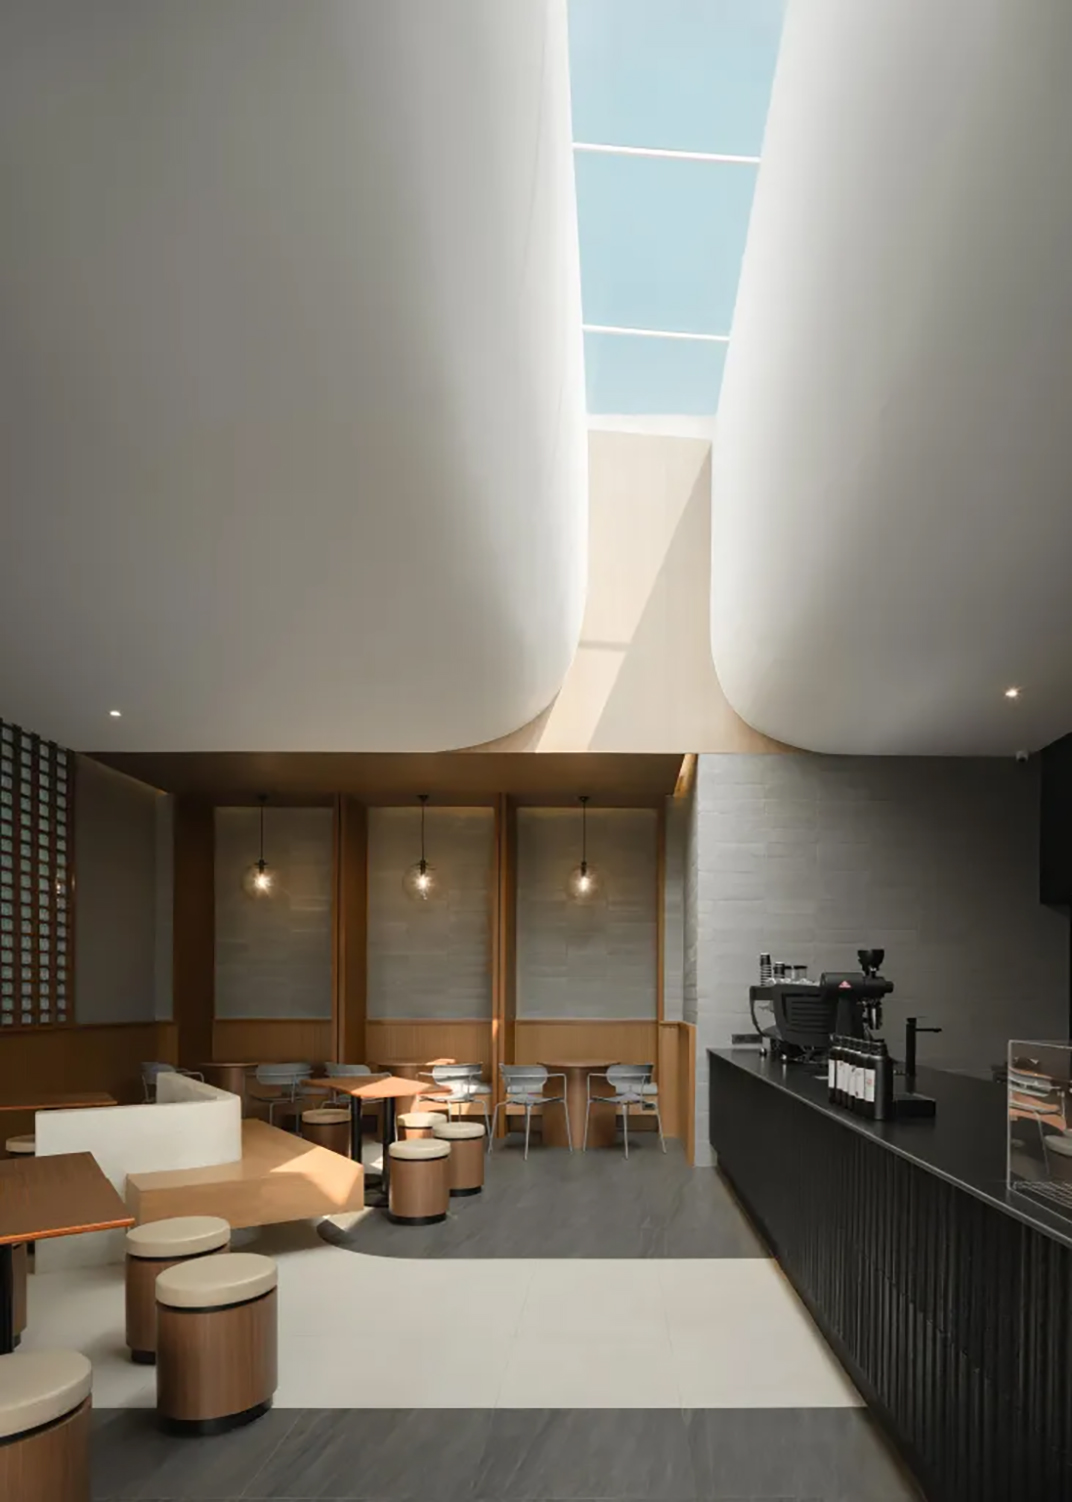 黑色系咖啡馆COMPLEMENT CAFE 泰国 清迈 北京 上海 珠海 广州 武汉 杭州 佛山 澳门 logo设计 vi设计 空间设计